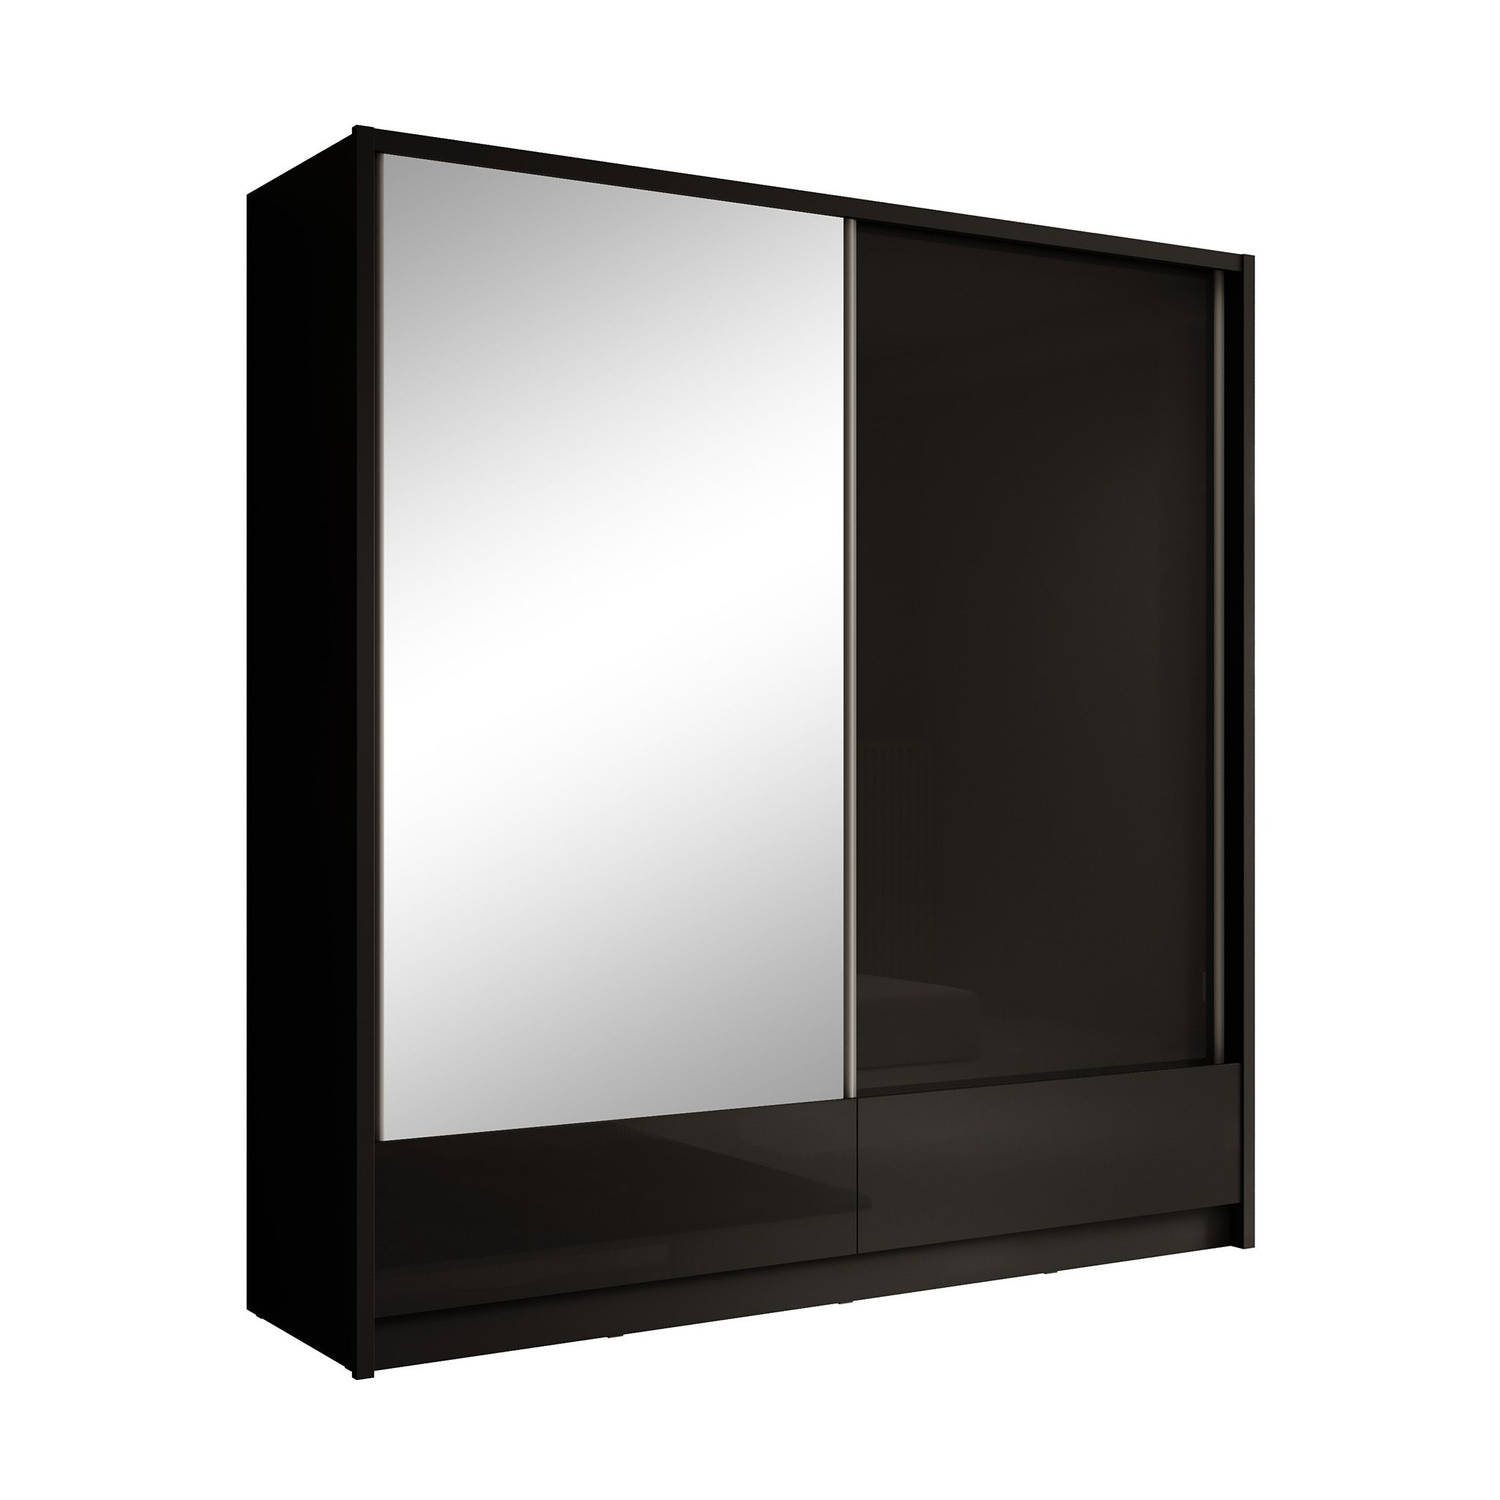 Meubella - Kledingkast Rumba - Zwart - 204 cm - Met spiegel